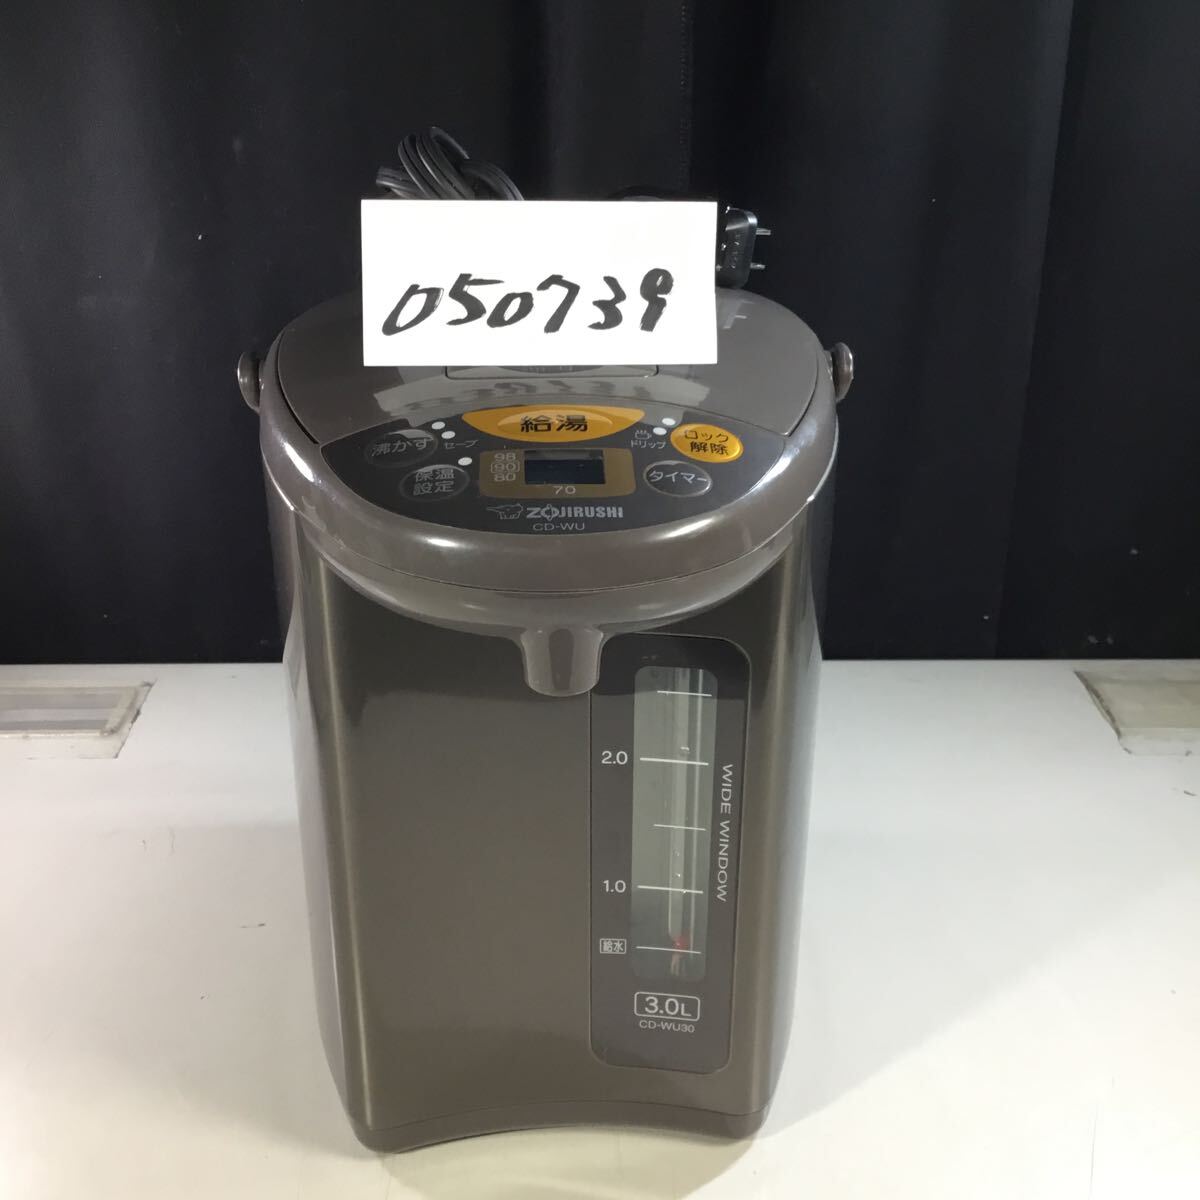 【送料無料】(050739F) ZOJIRUSHI 象印 電気ポッド CD-WU30 3.0L 2020年製 中古品電動ポット の画像1